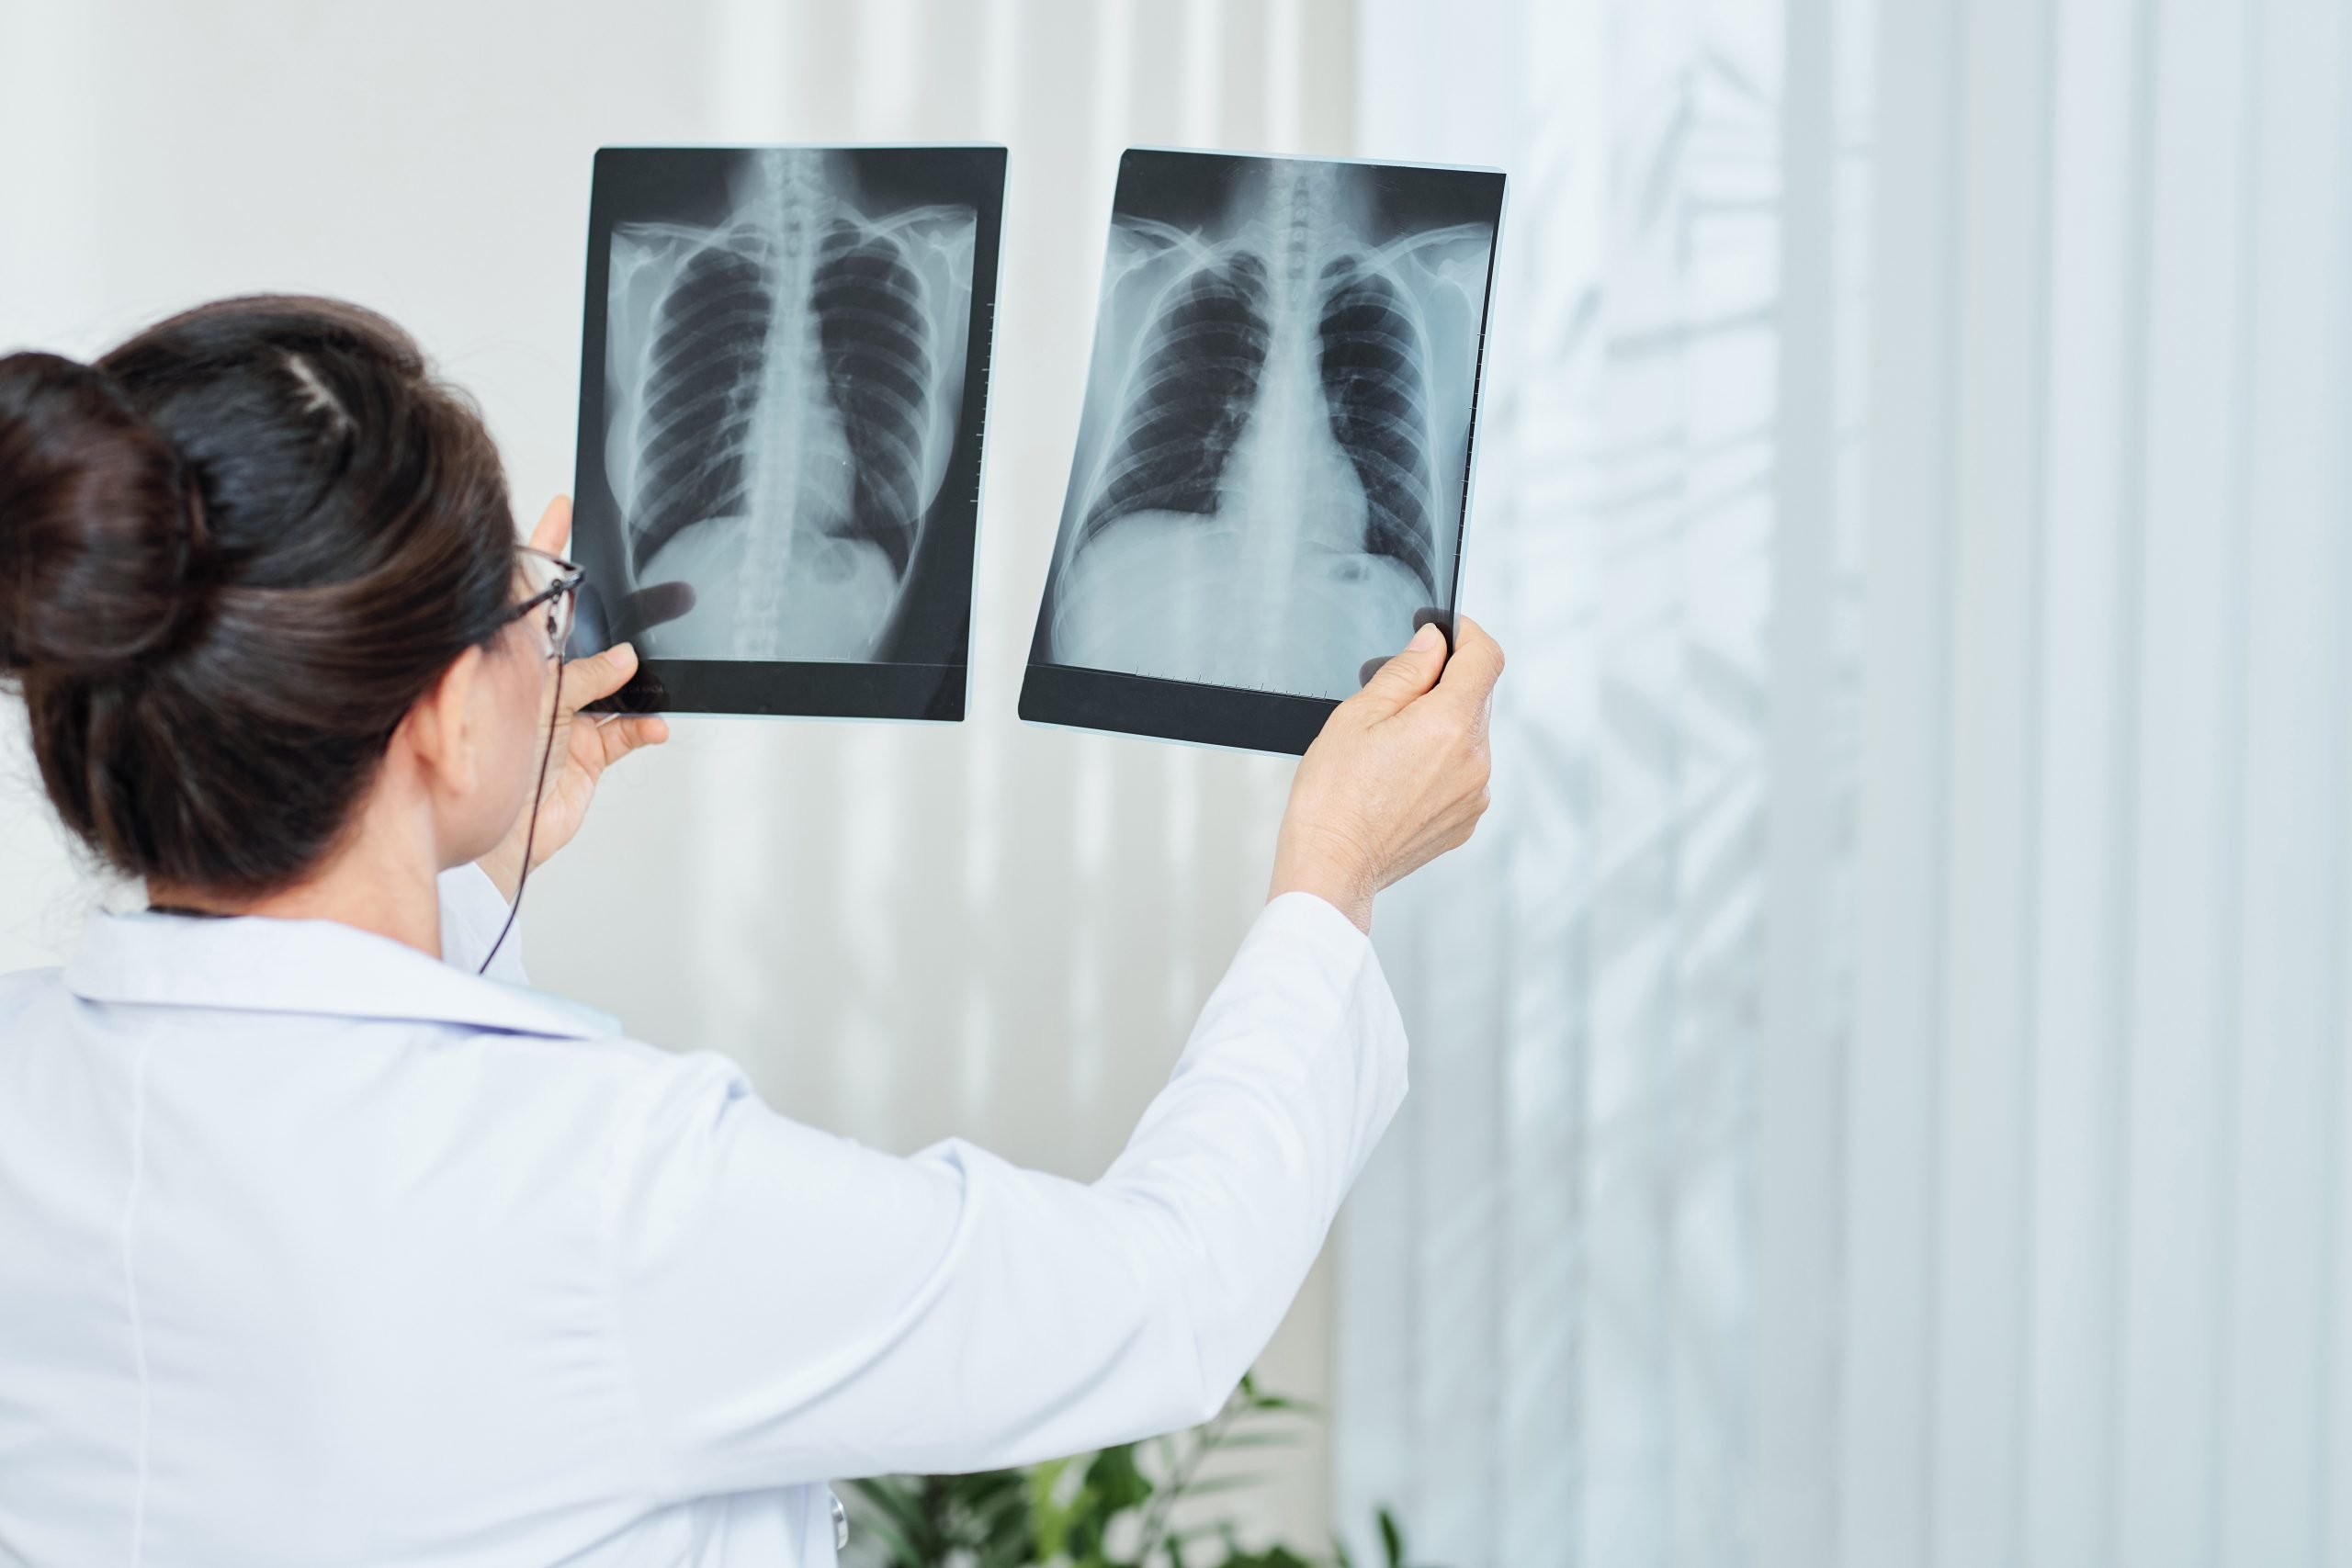 pulmonologist-checking-x-rays-2021-08-28-05-20-25-utc